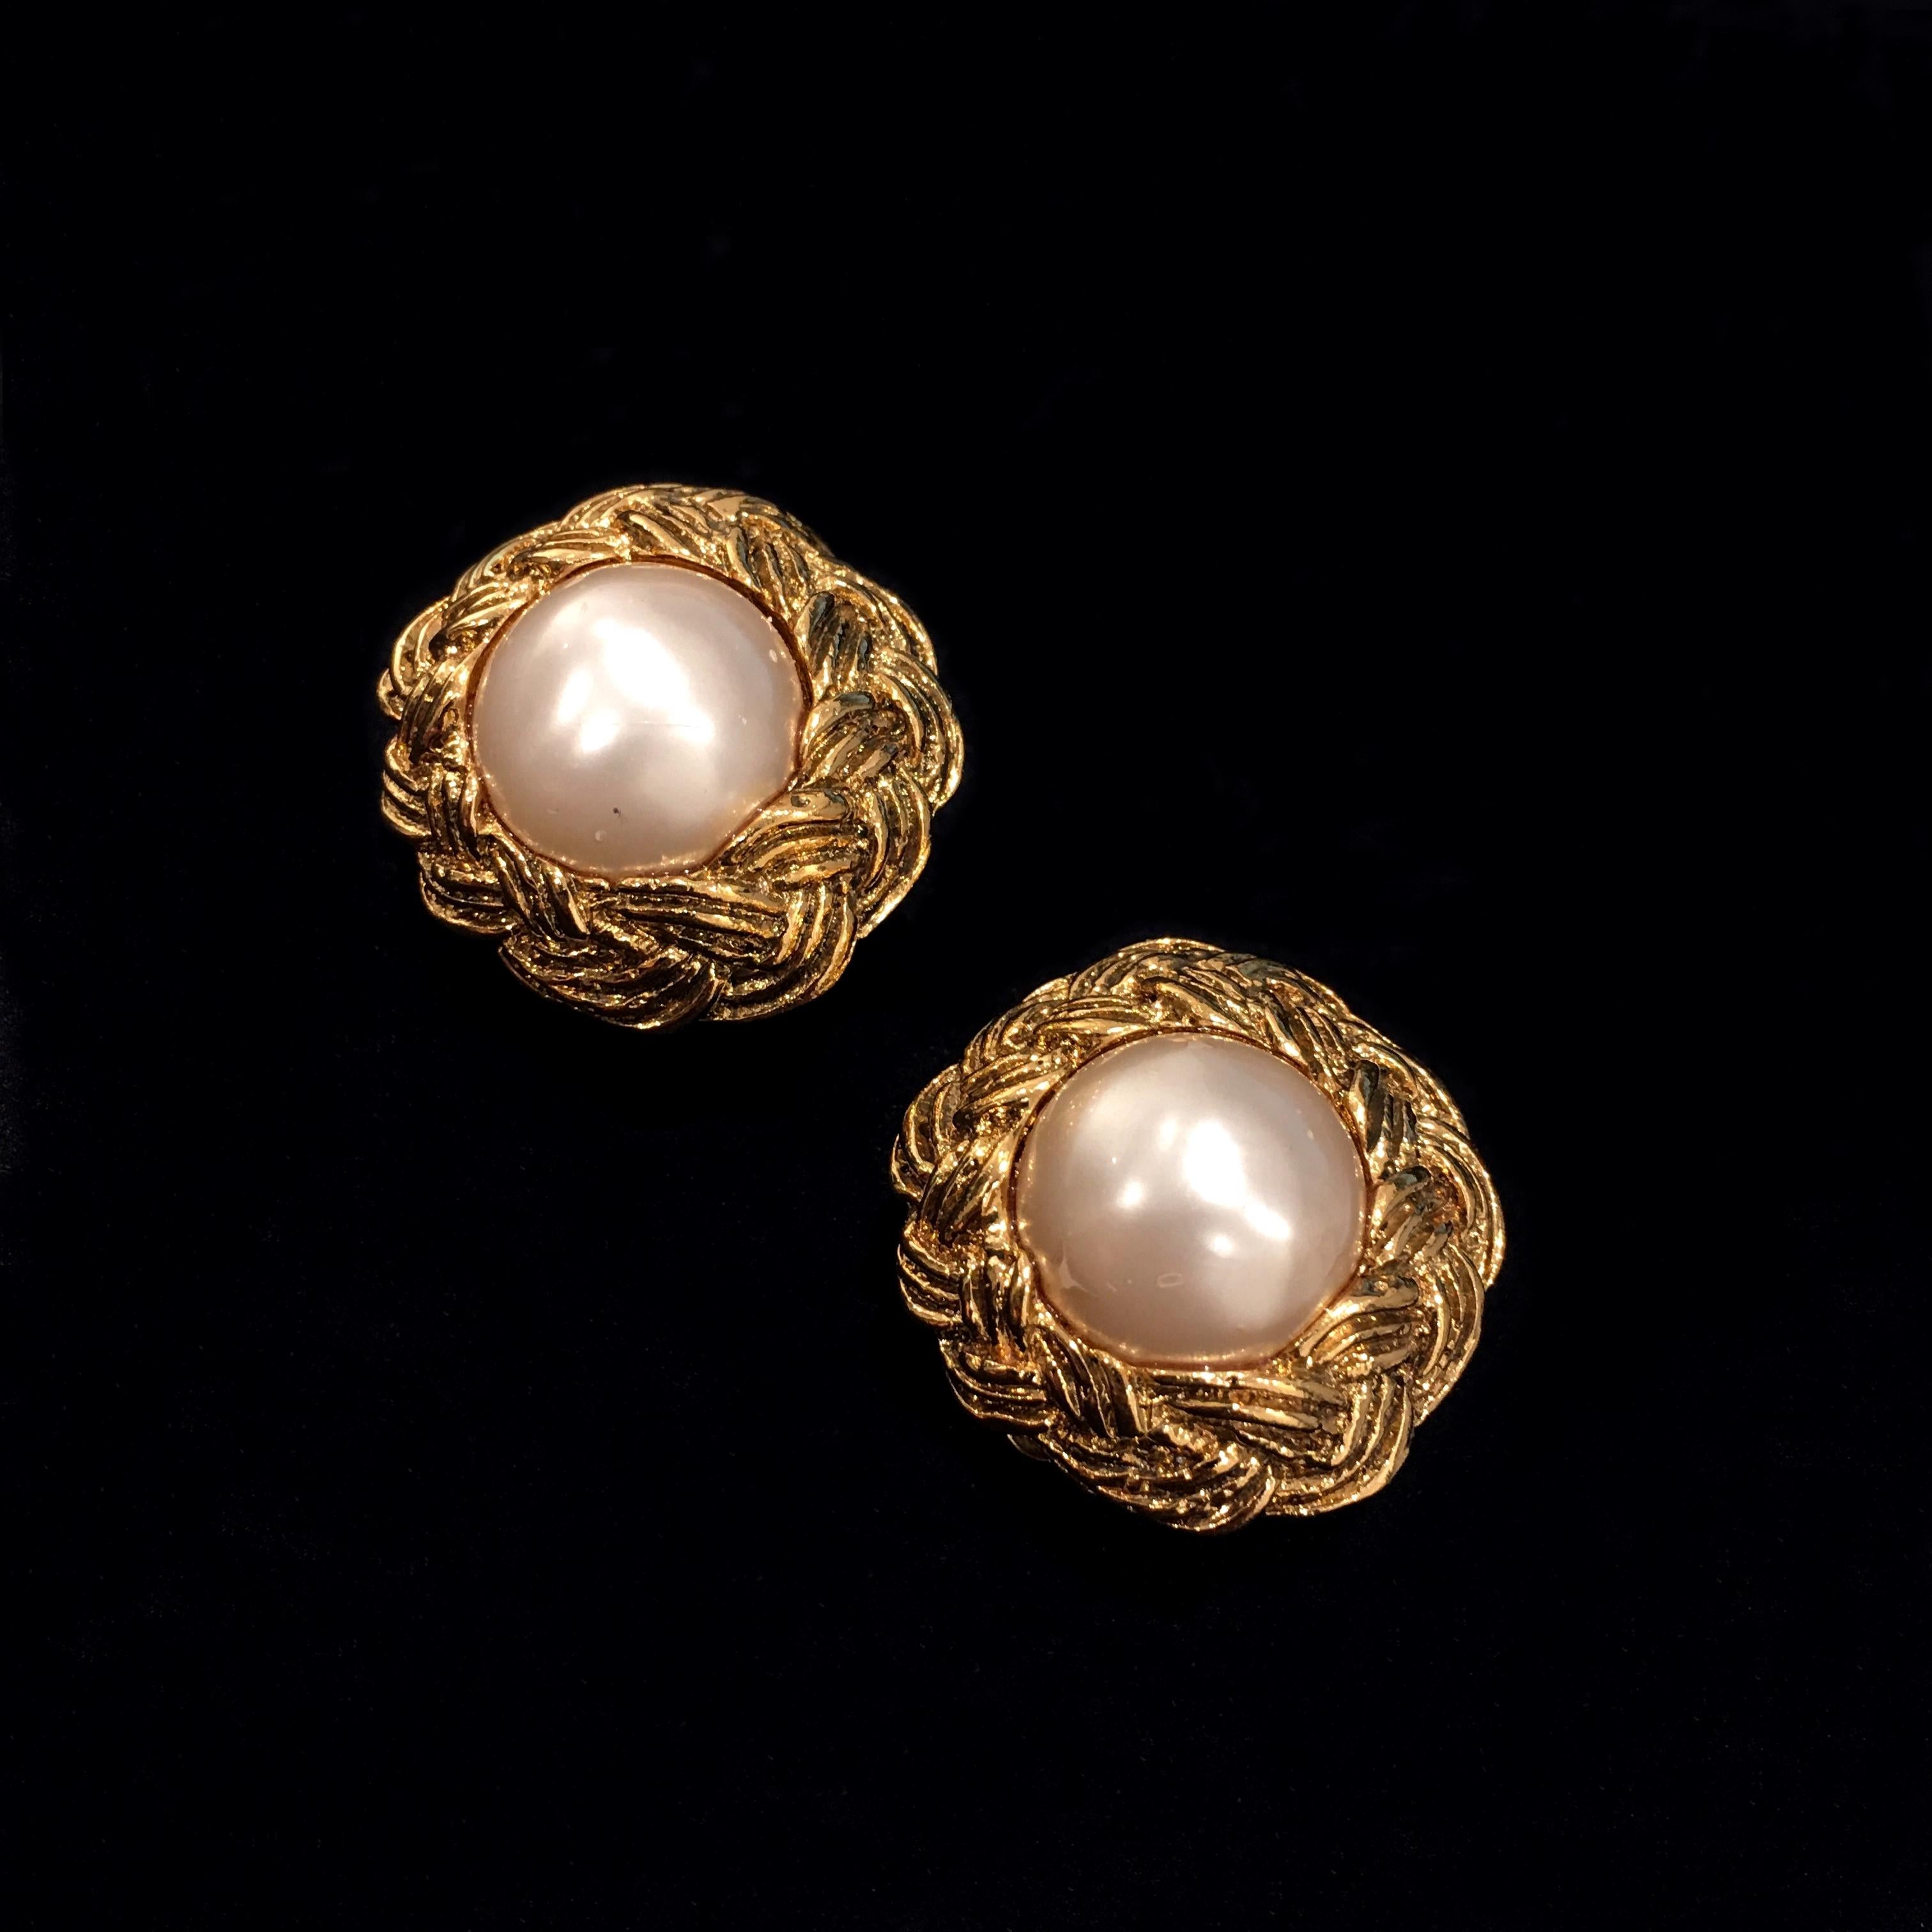 chanel earrings gold pearl